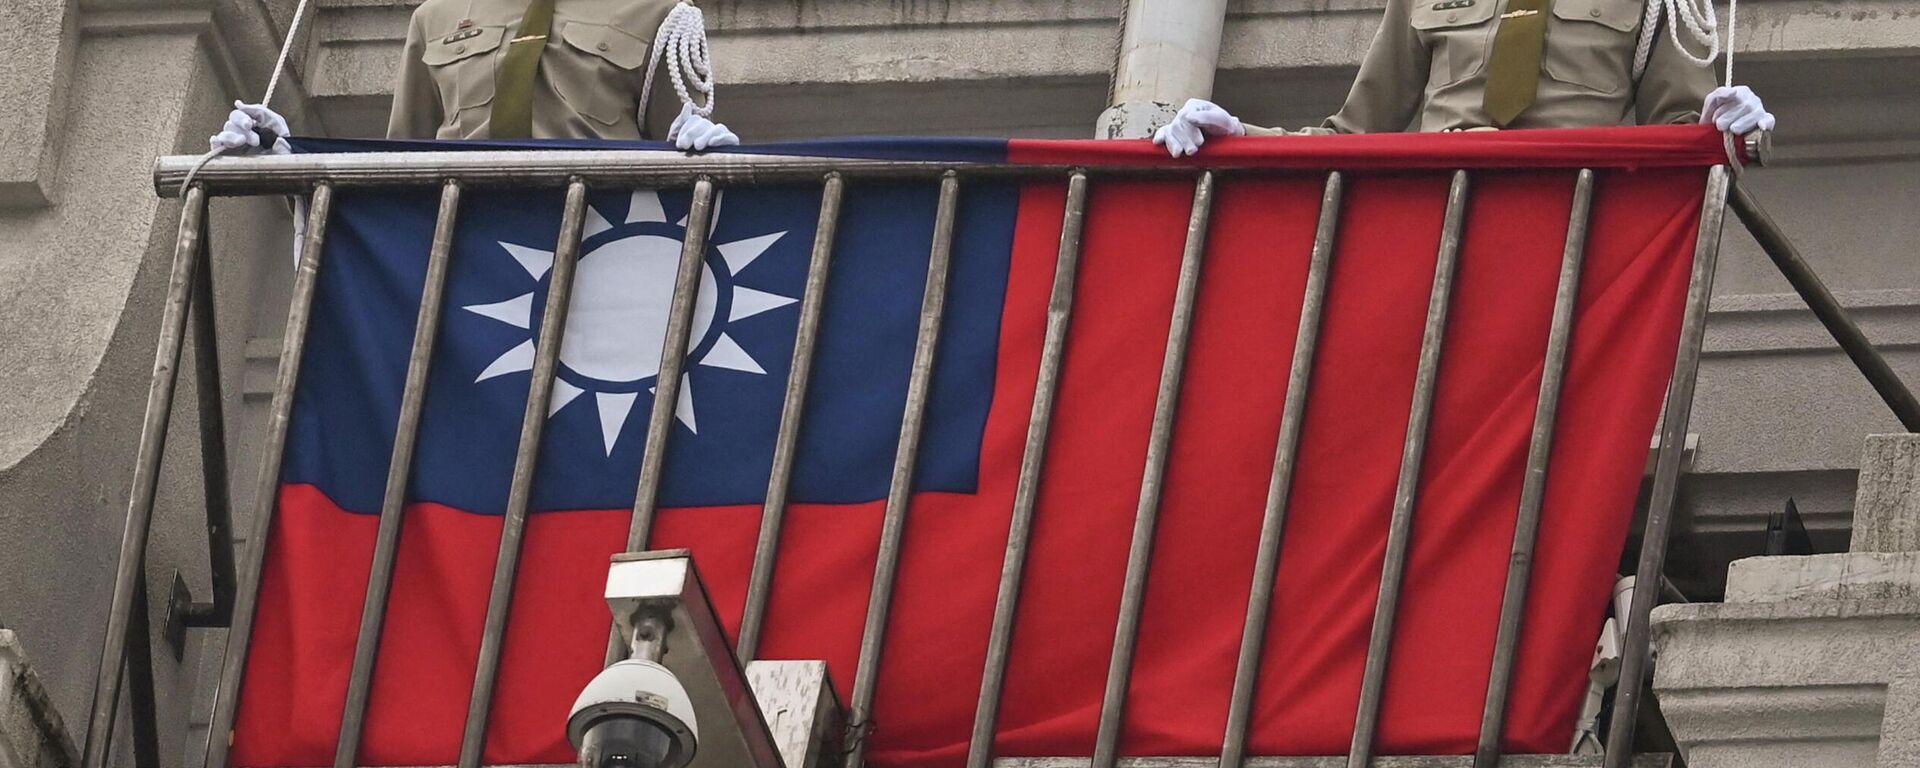 Policías militares resguardan una bandera de Taiwán. - Sputnik Mundo, 1920, 28.10.2022